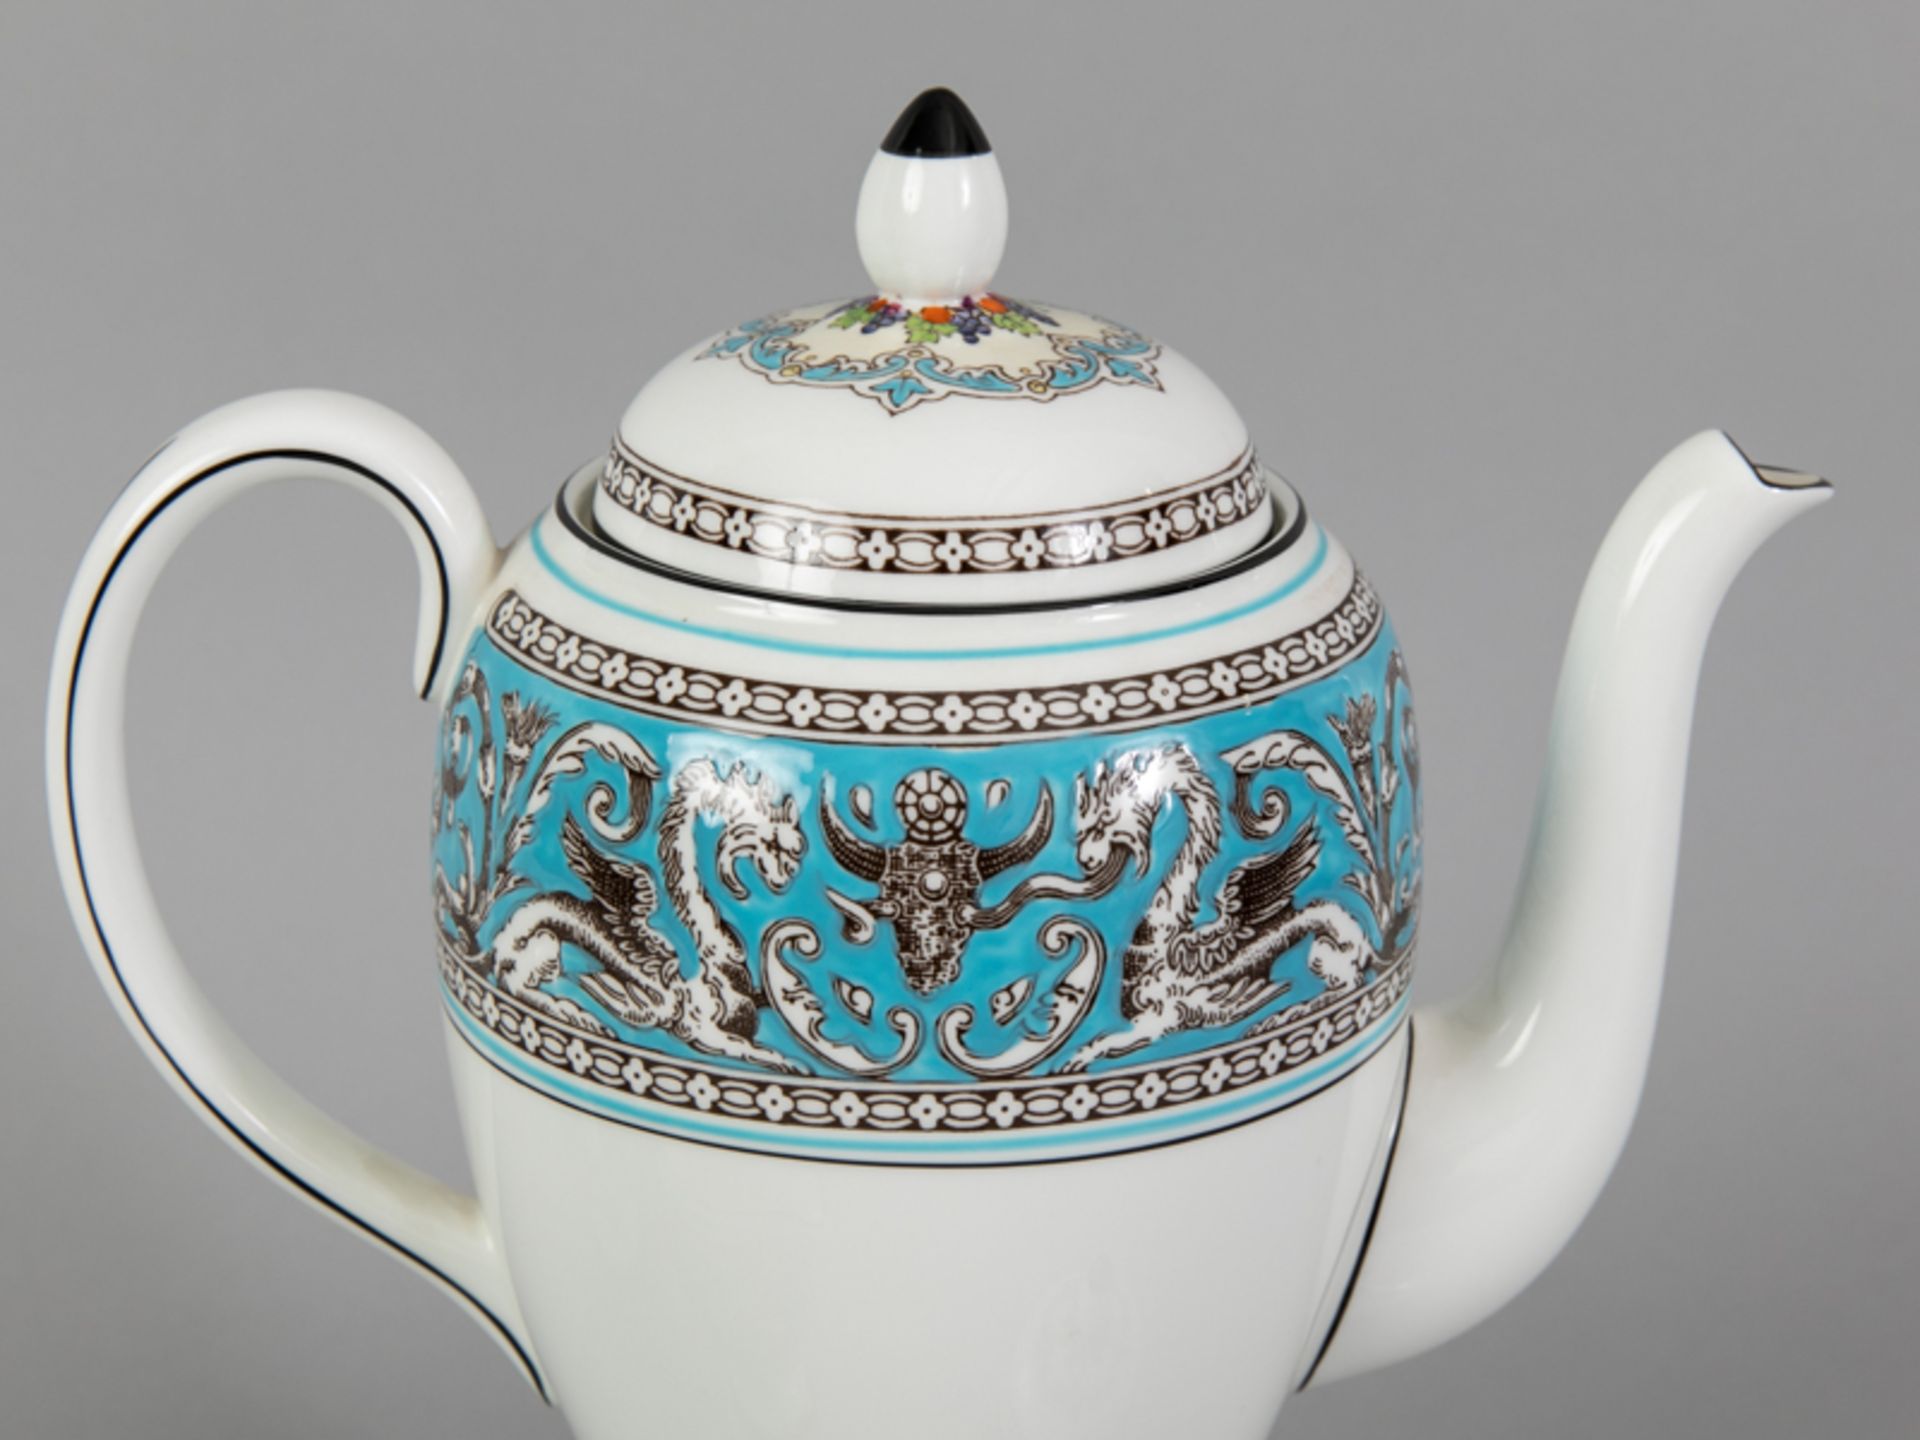 Kaffeekanne, Rahmgießer und Zuckerdose, Form "Florentine Turquoise", Wedgwood, 20. Jh. - Image 2 of 4